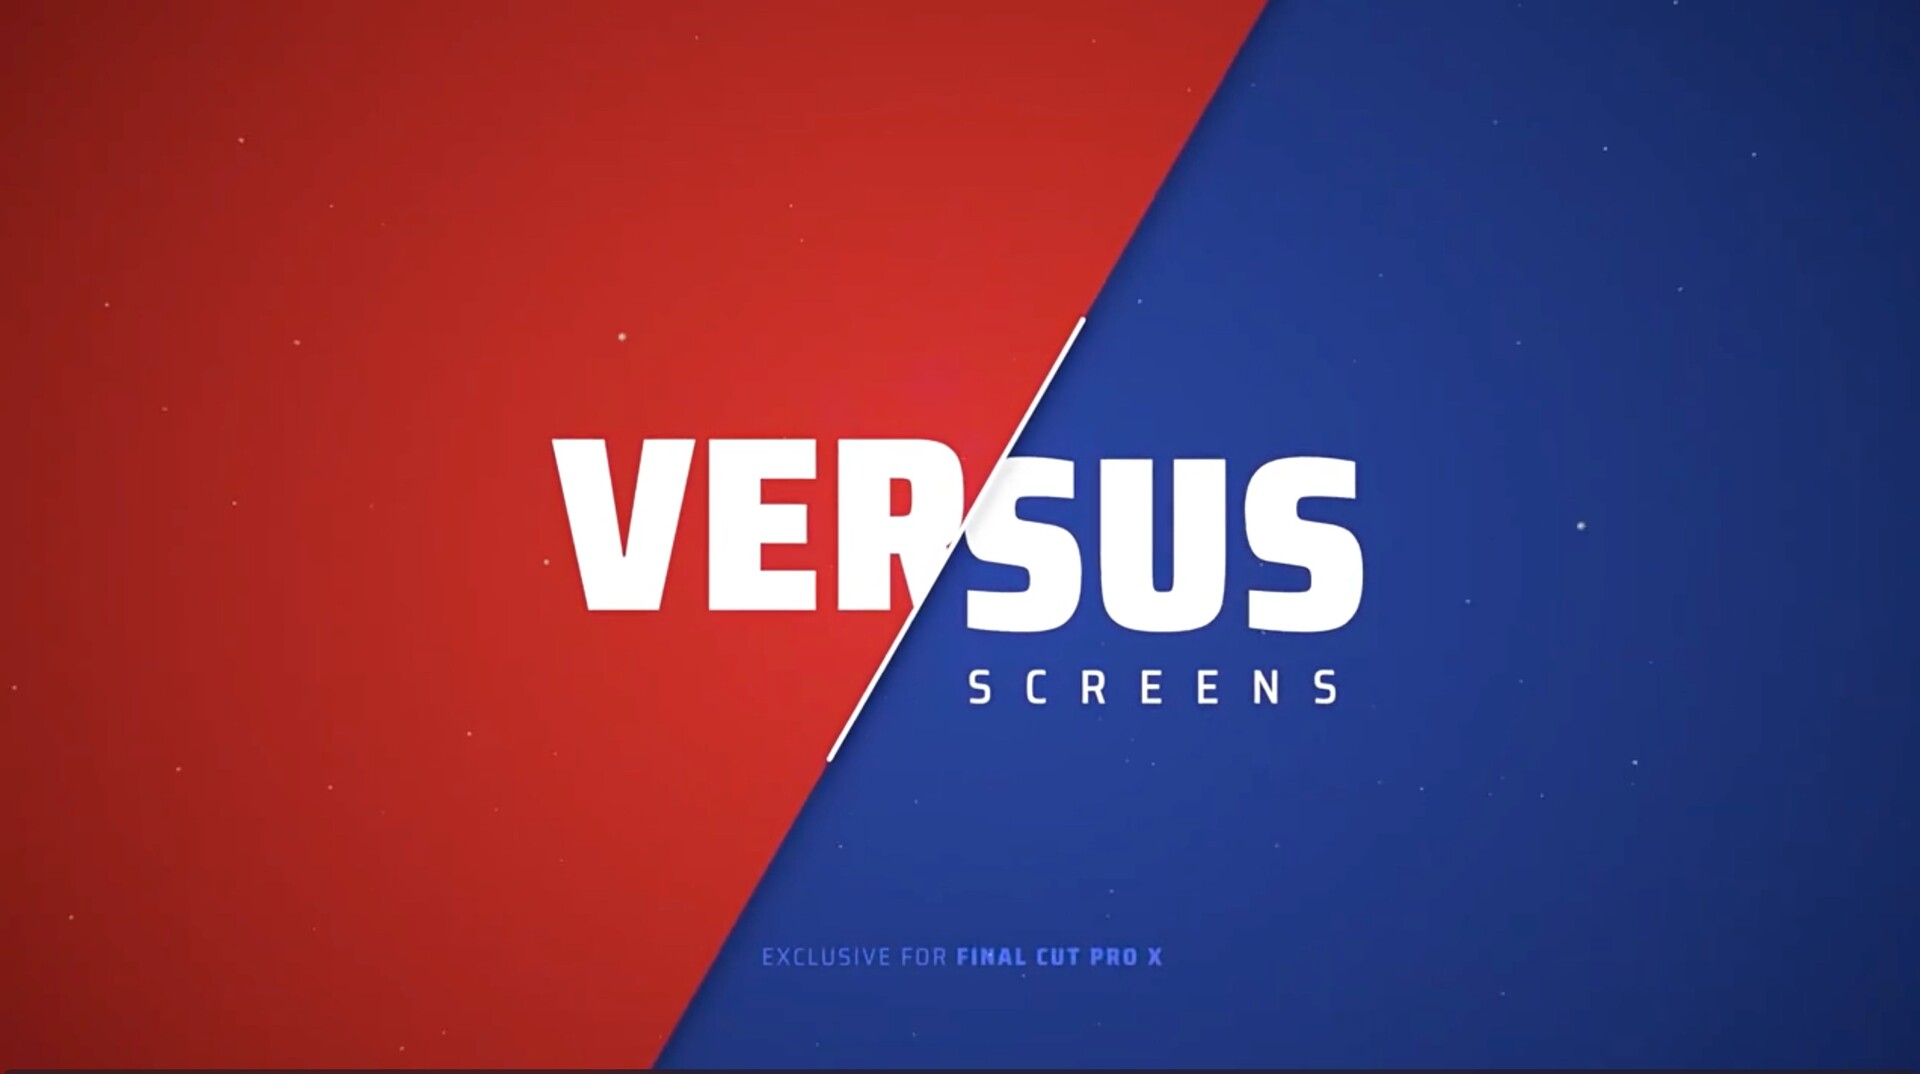 FCPX插件：30种对战比赛双方选手信息介绍展示包装动画预设LenoFX Versus Screens